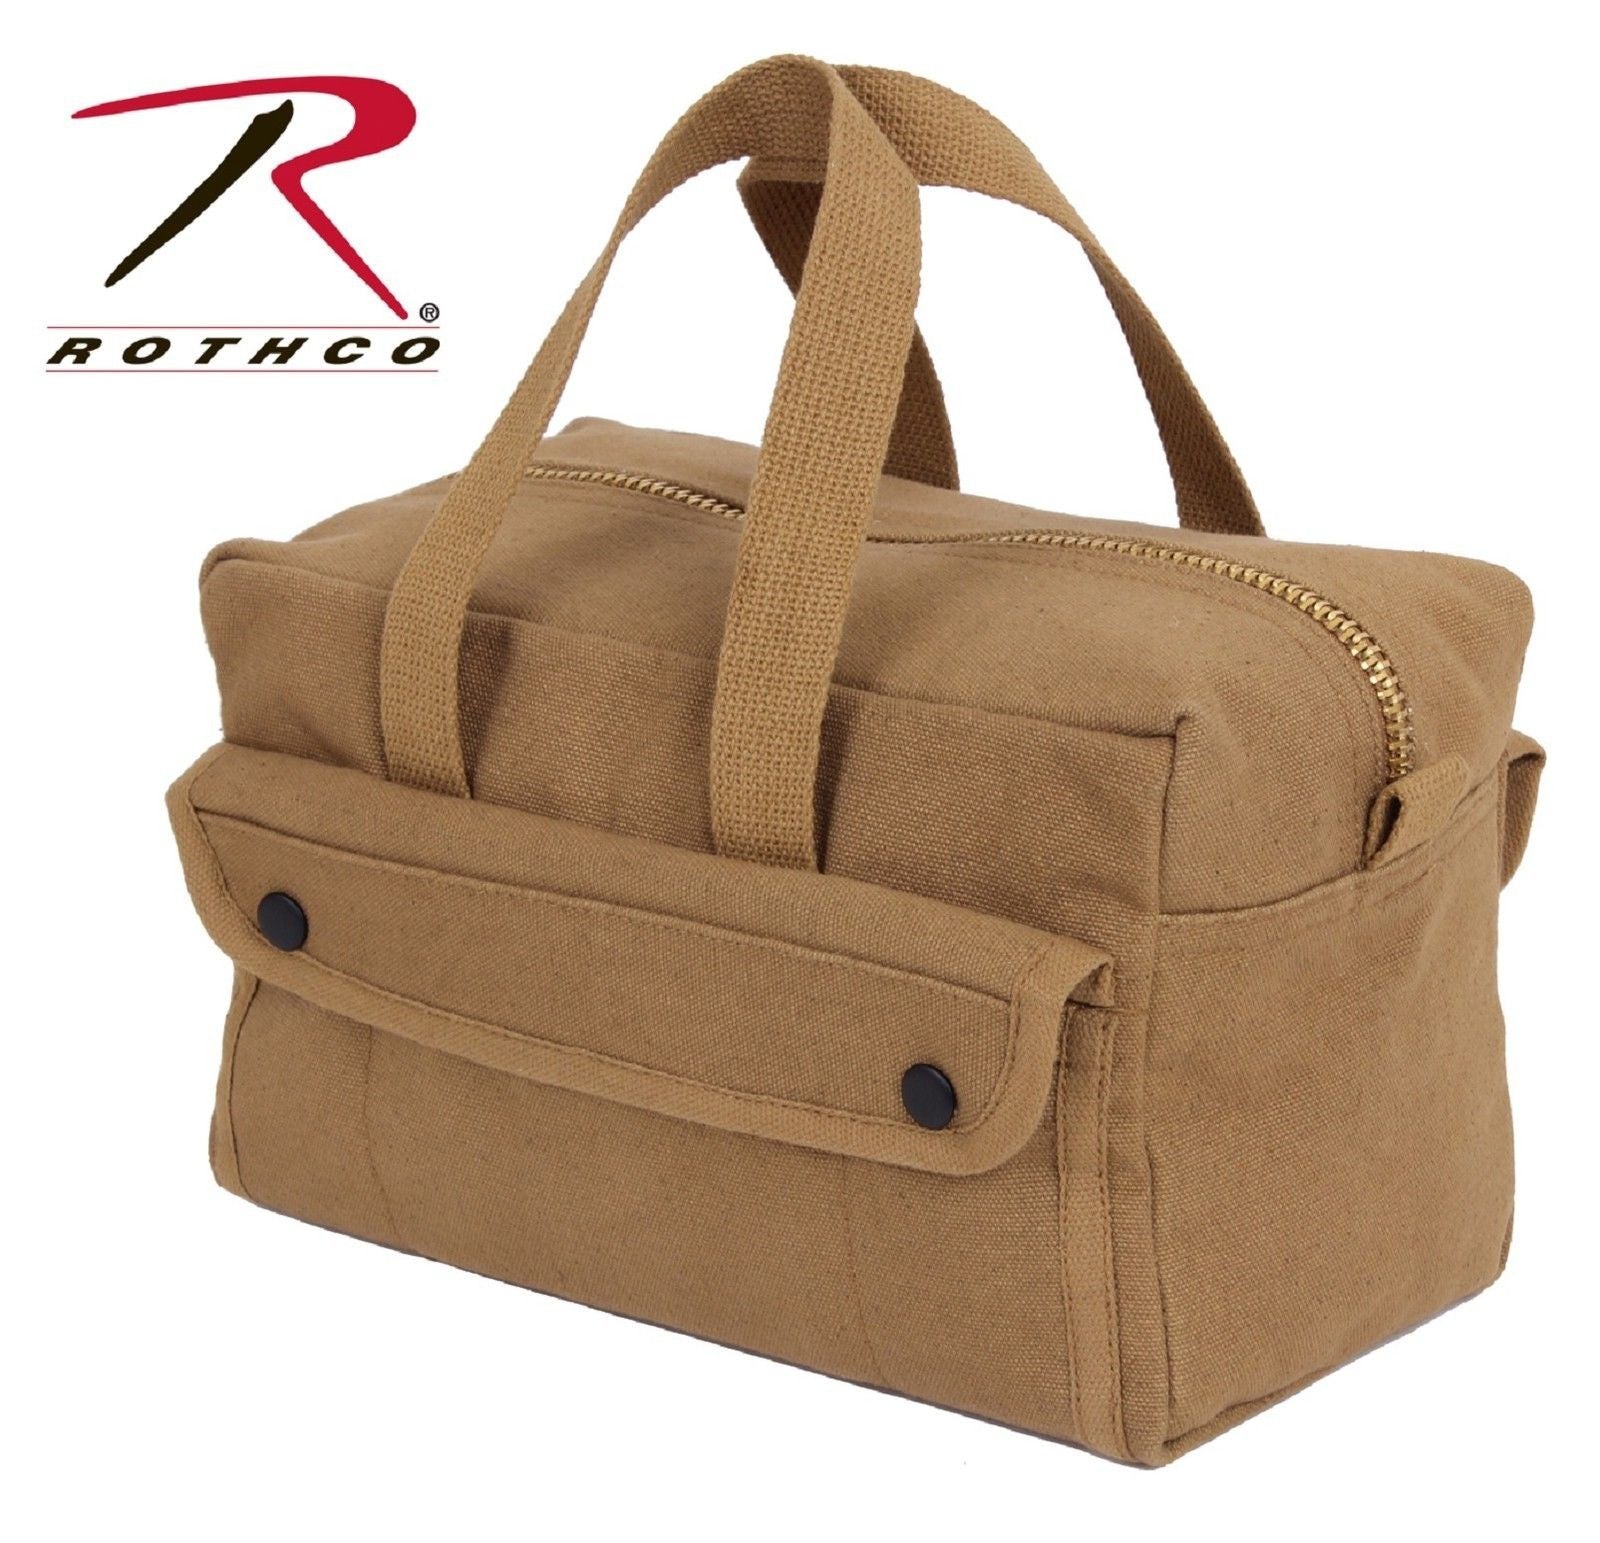 Rothco Coyote Brown Military Type 10-Pocket Mechanics Tool Bag w/ Bras ...